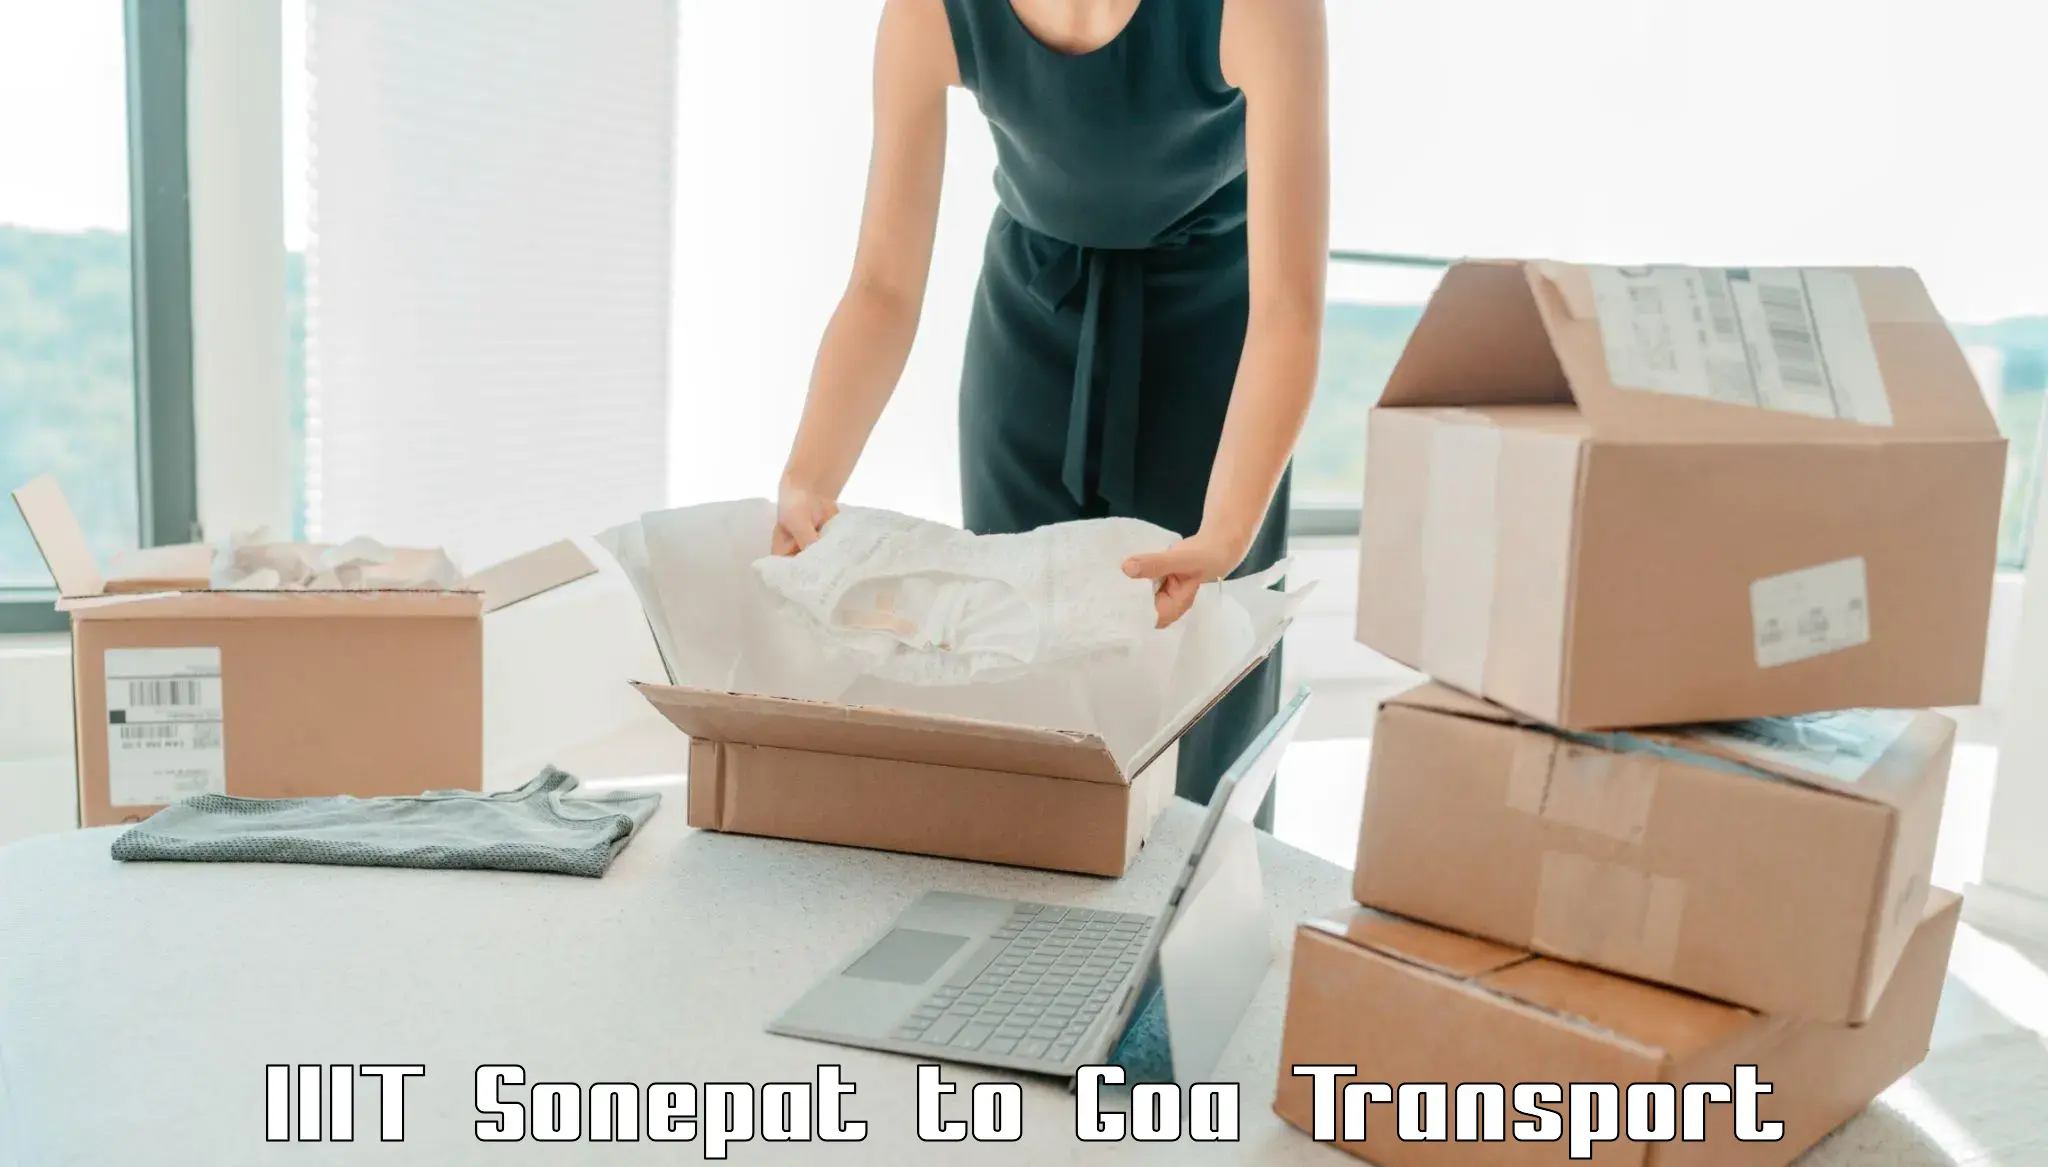 Online transport service IIIT Sonepat to Goa